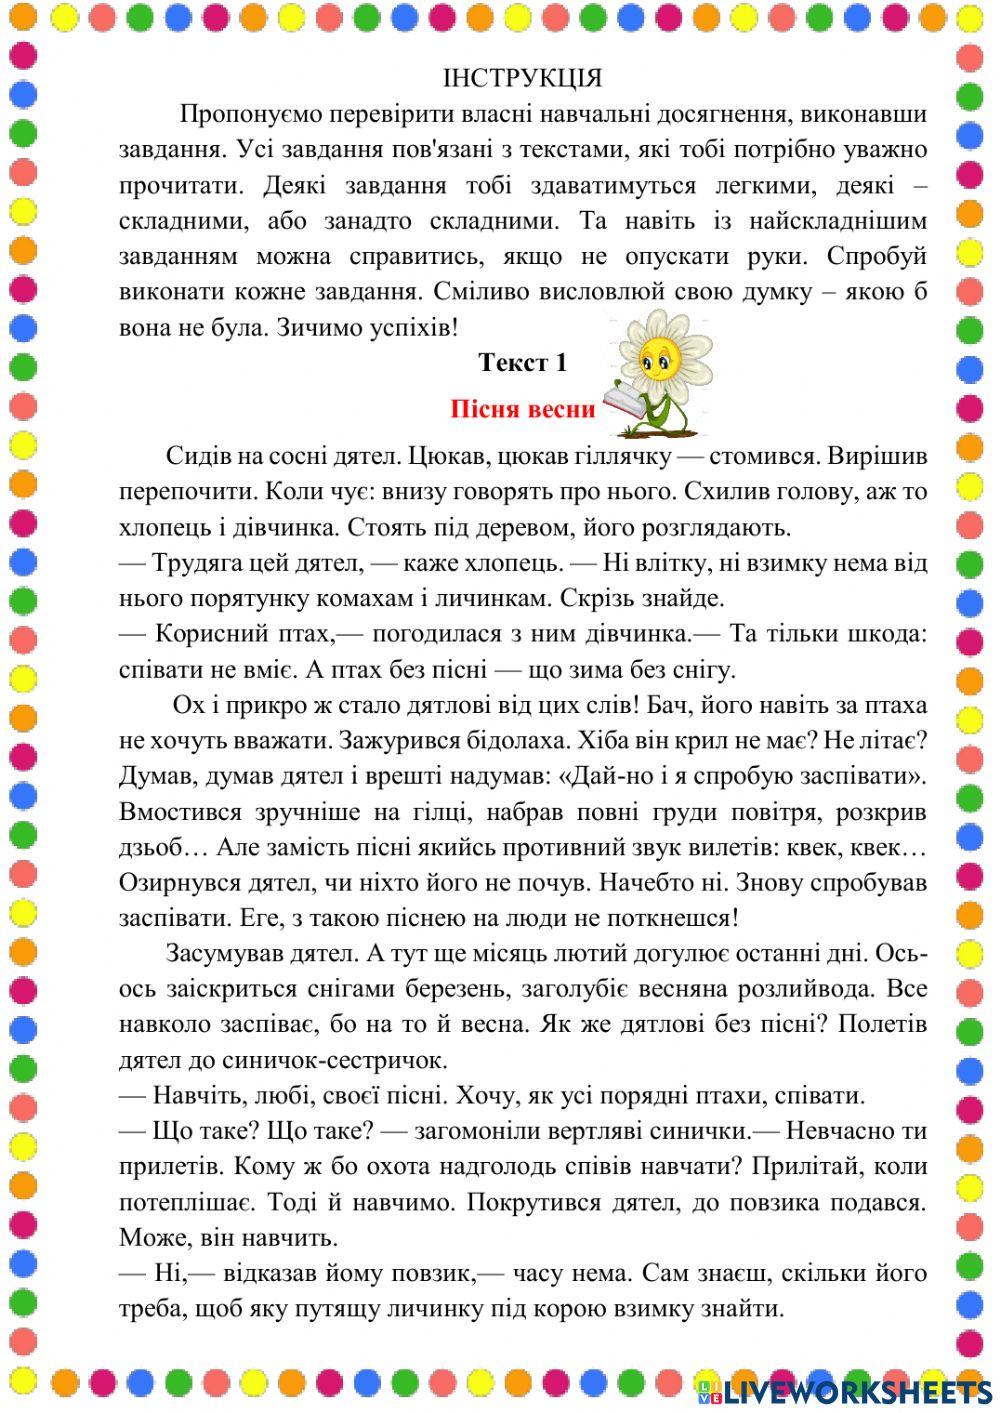 Українська мова. Робота з літературним твором